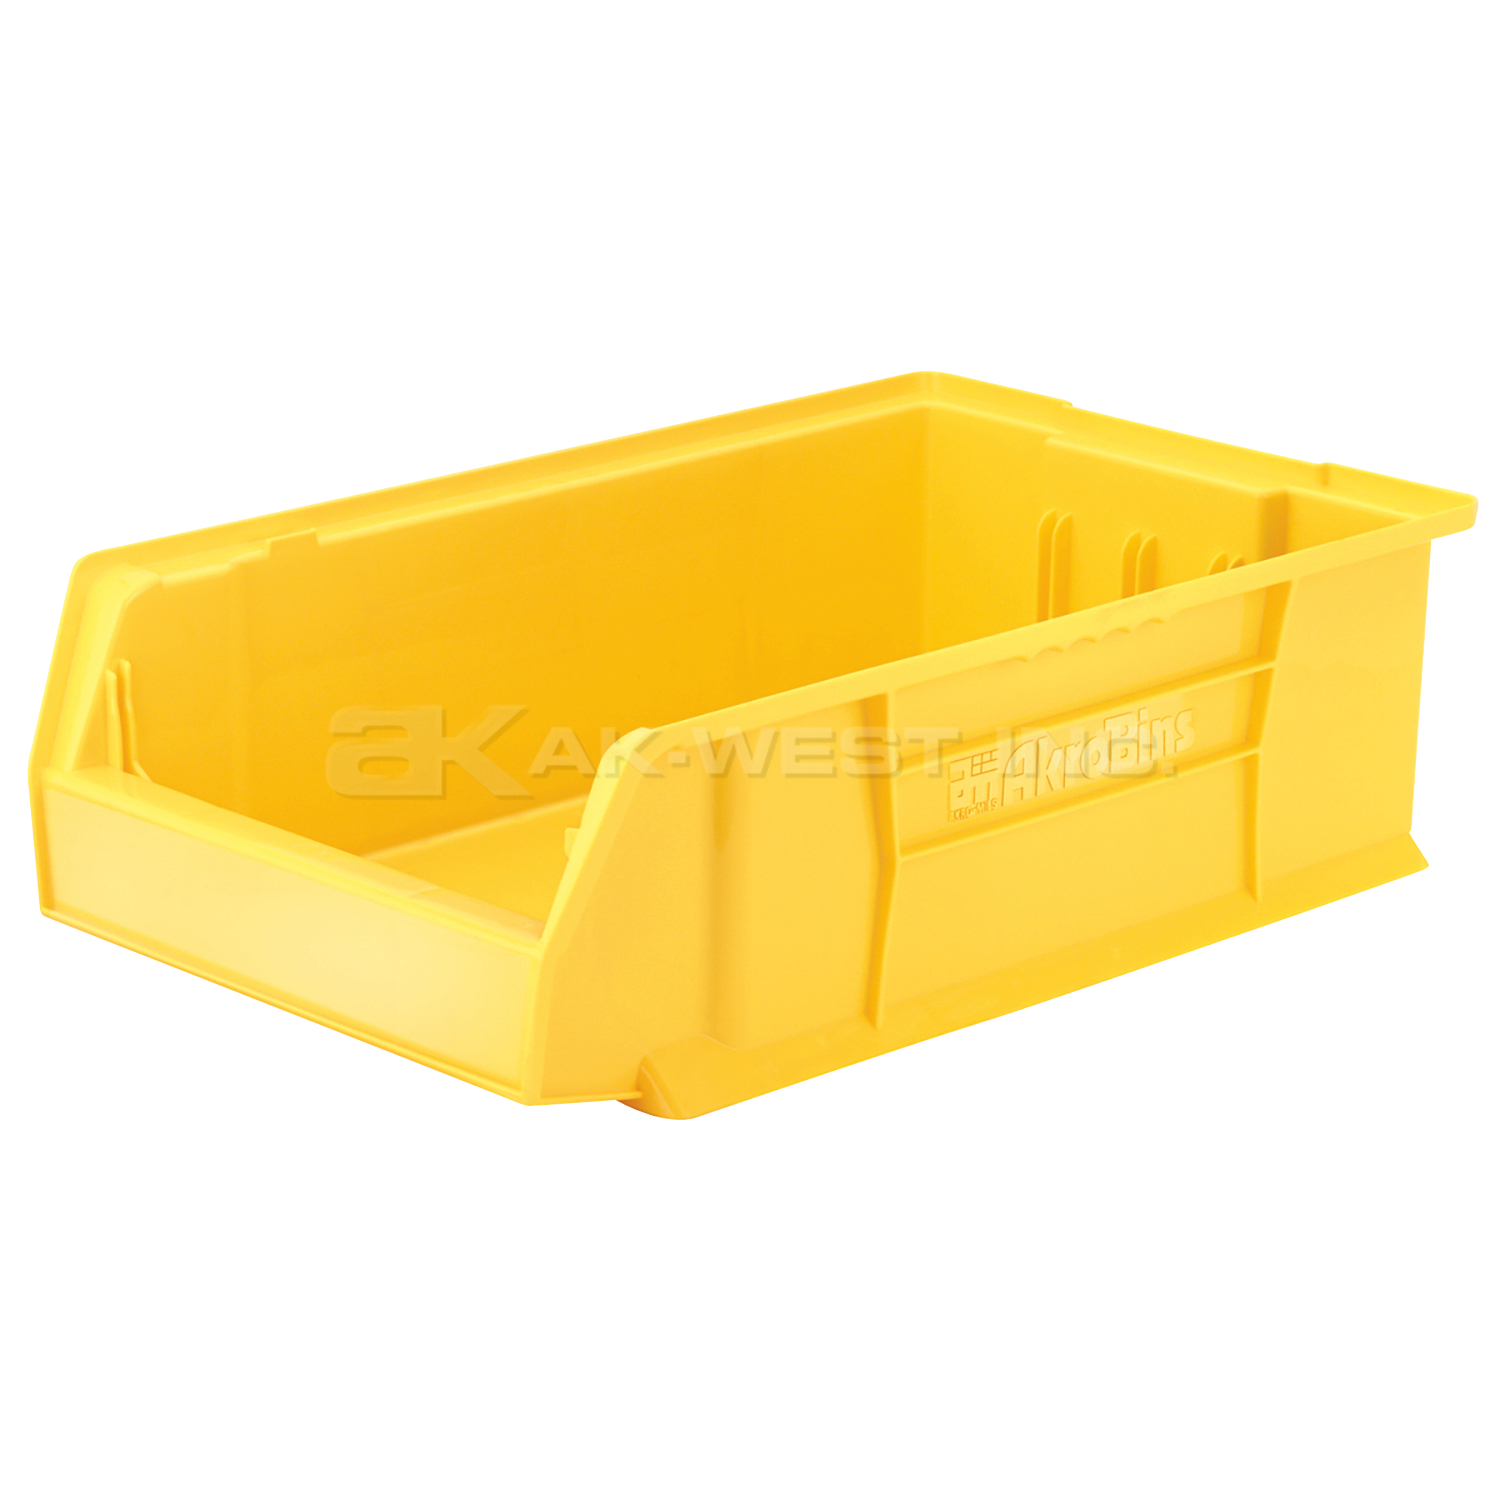 Yellow, 20" x 12-1/8" x 6" Stacking Shelf Bin (4 Per Carton)